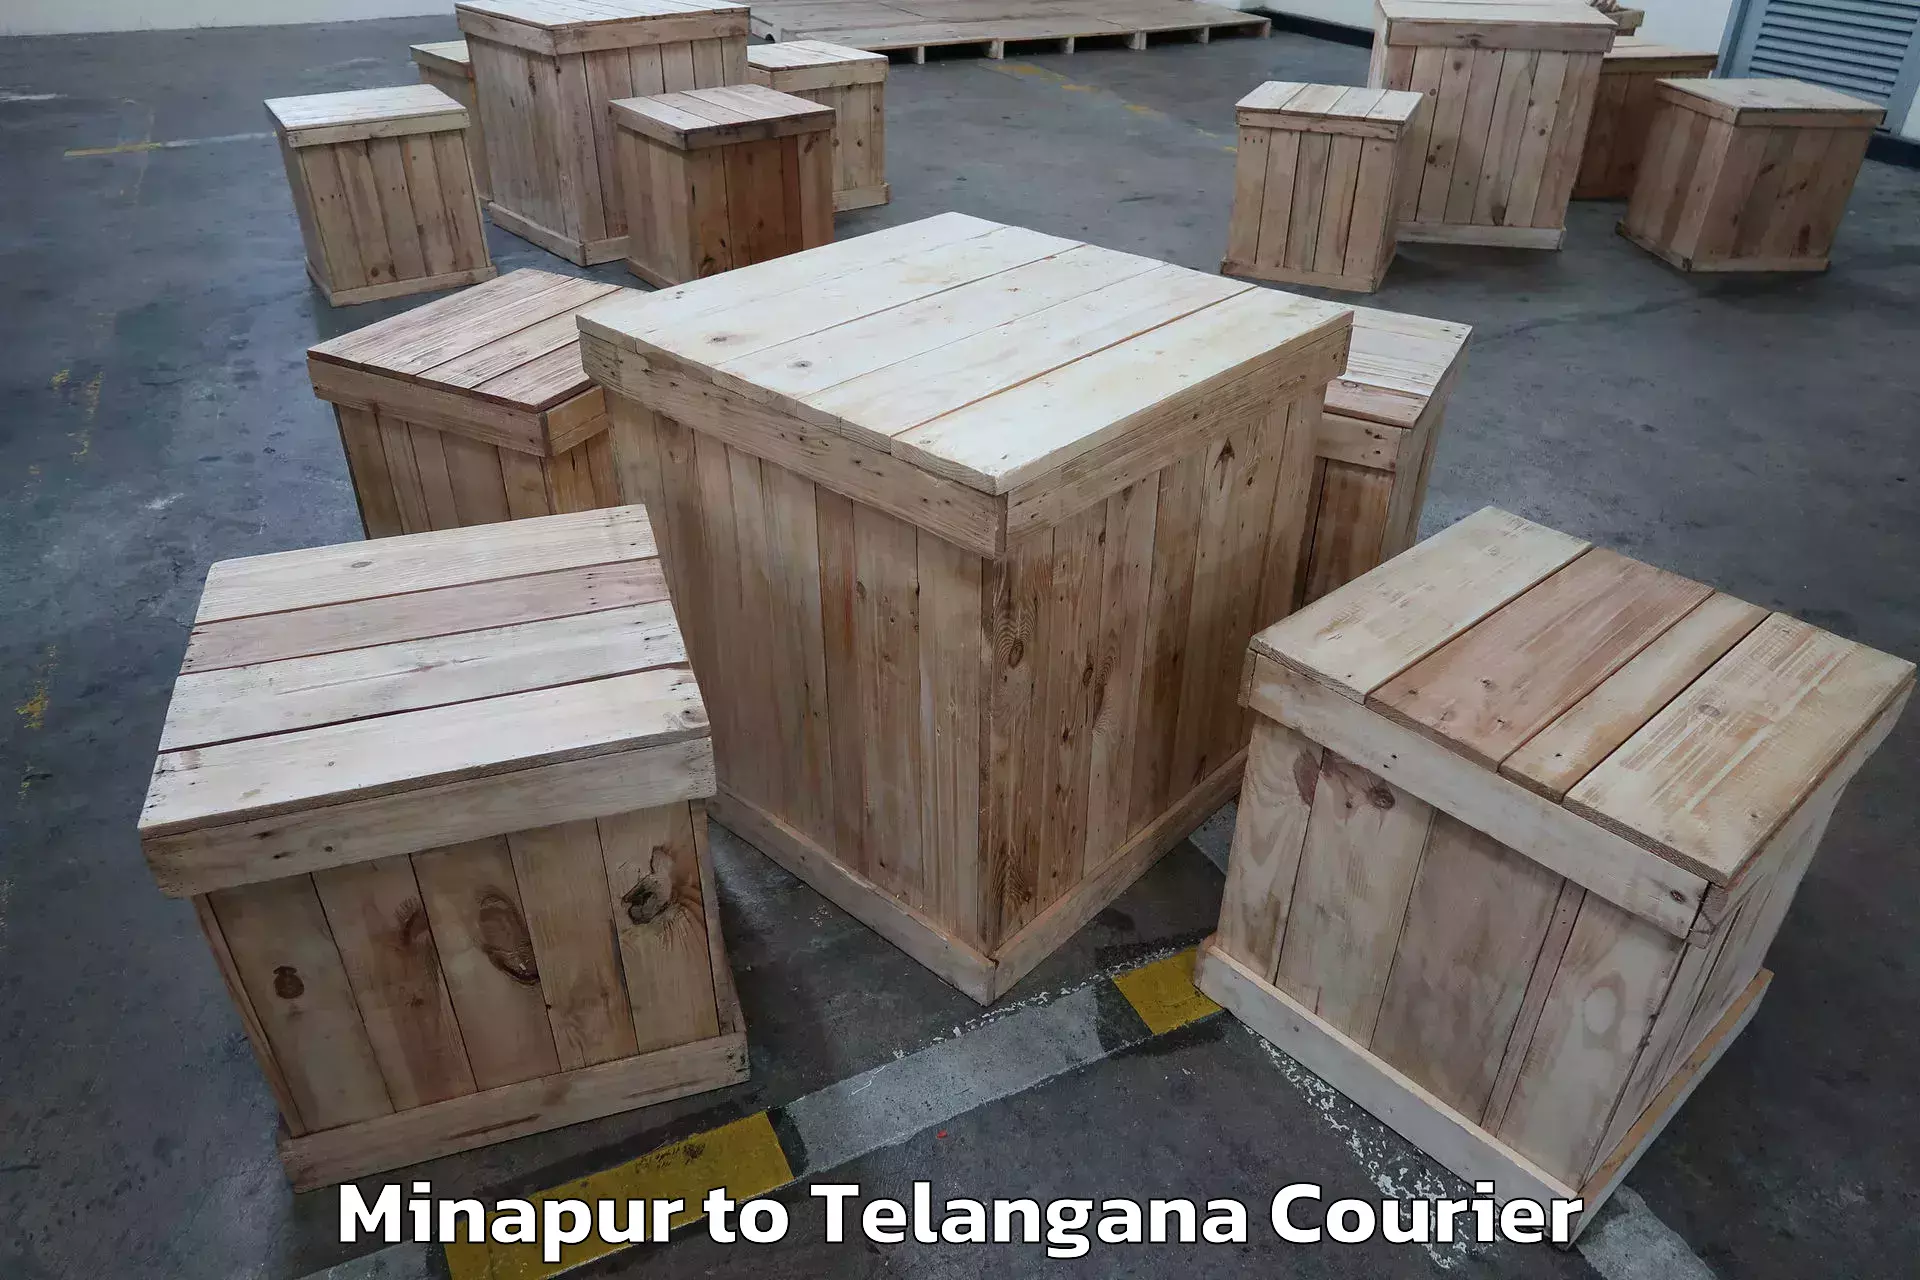 Furniture delivery service Minapur to Manuguru